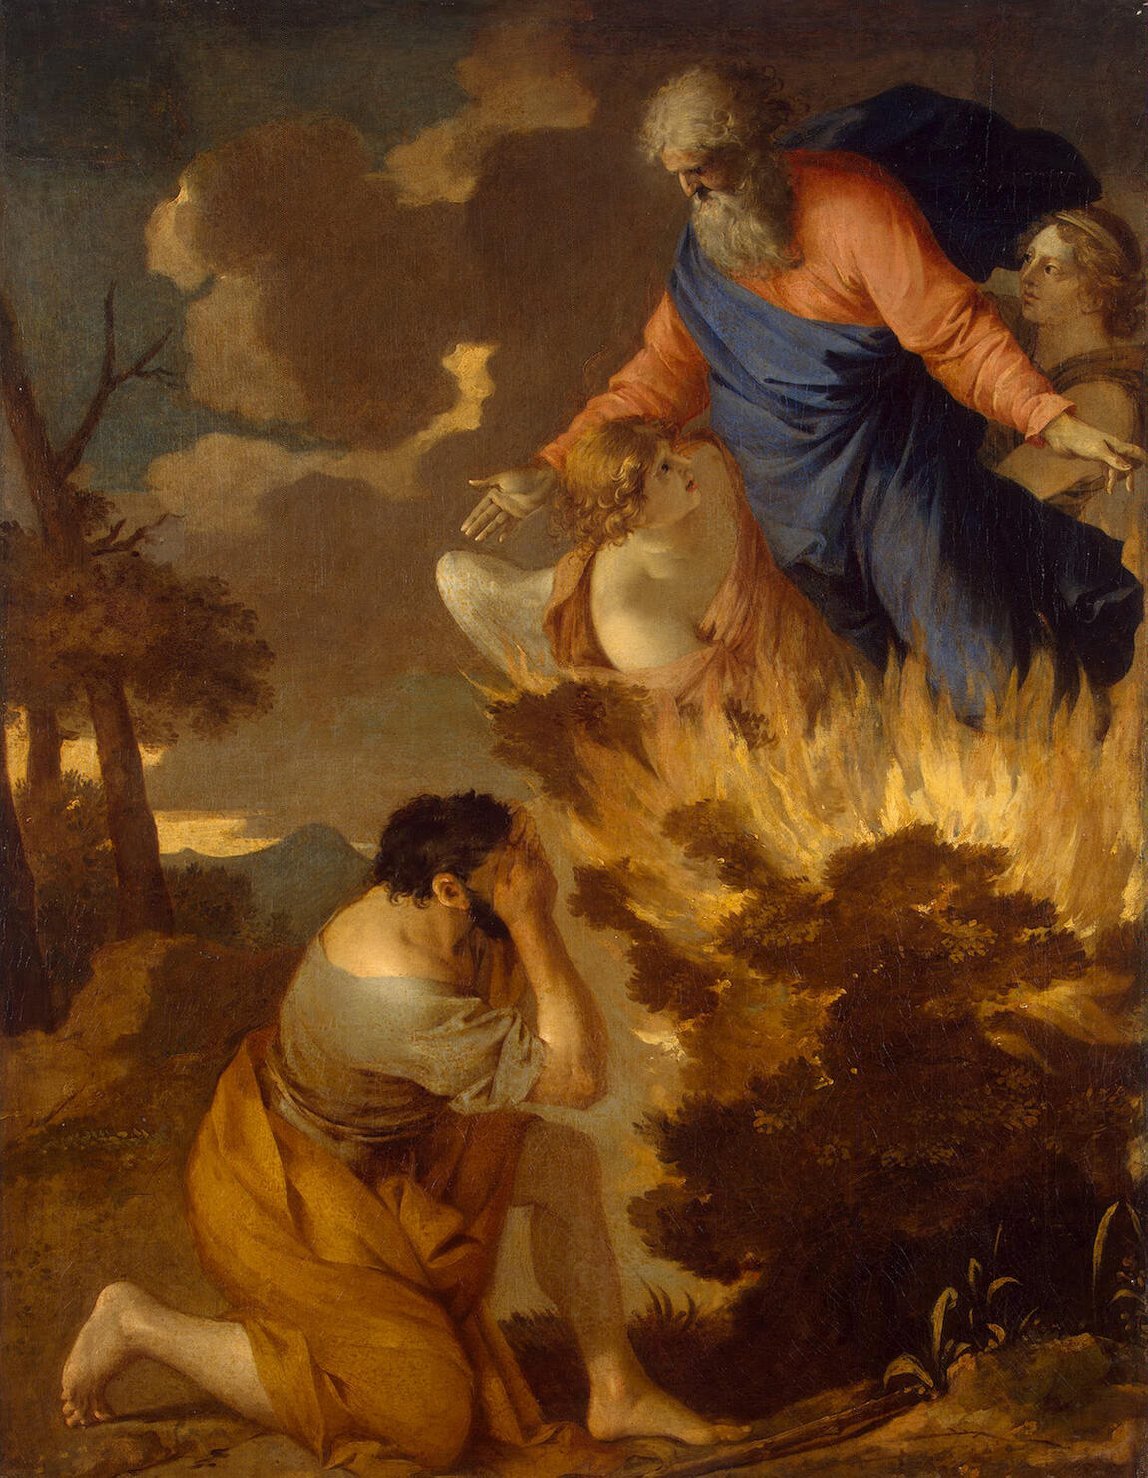 Obraz przedstawia mężczyznę klęczącego przed palącym się krzewem. Mężczyzna zasłania dłońmi swoją twarz. Nad krzewem unosi się Bóg Ojciec z rozpostartymi rękami. Otaczają go dwa duże anioły. 